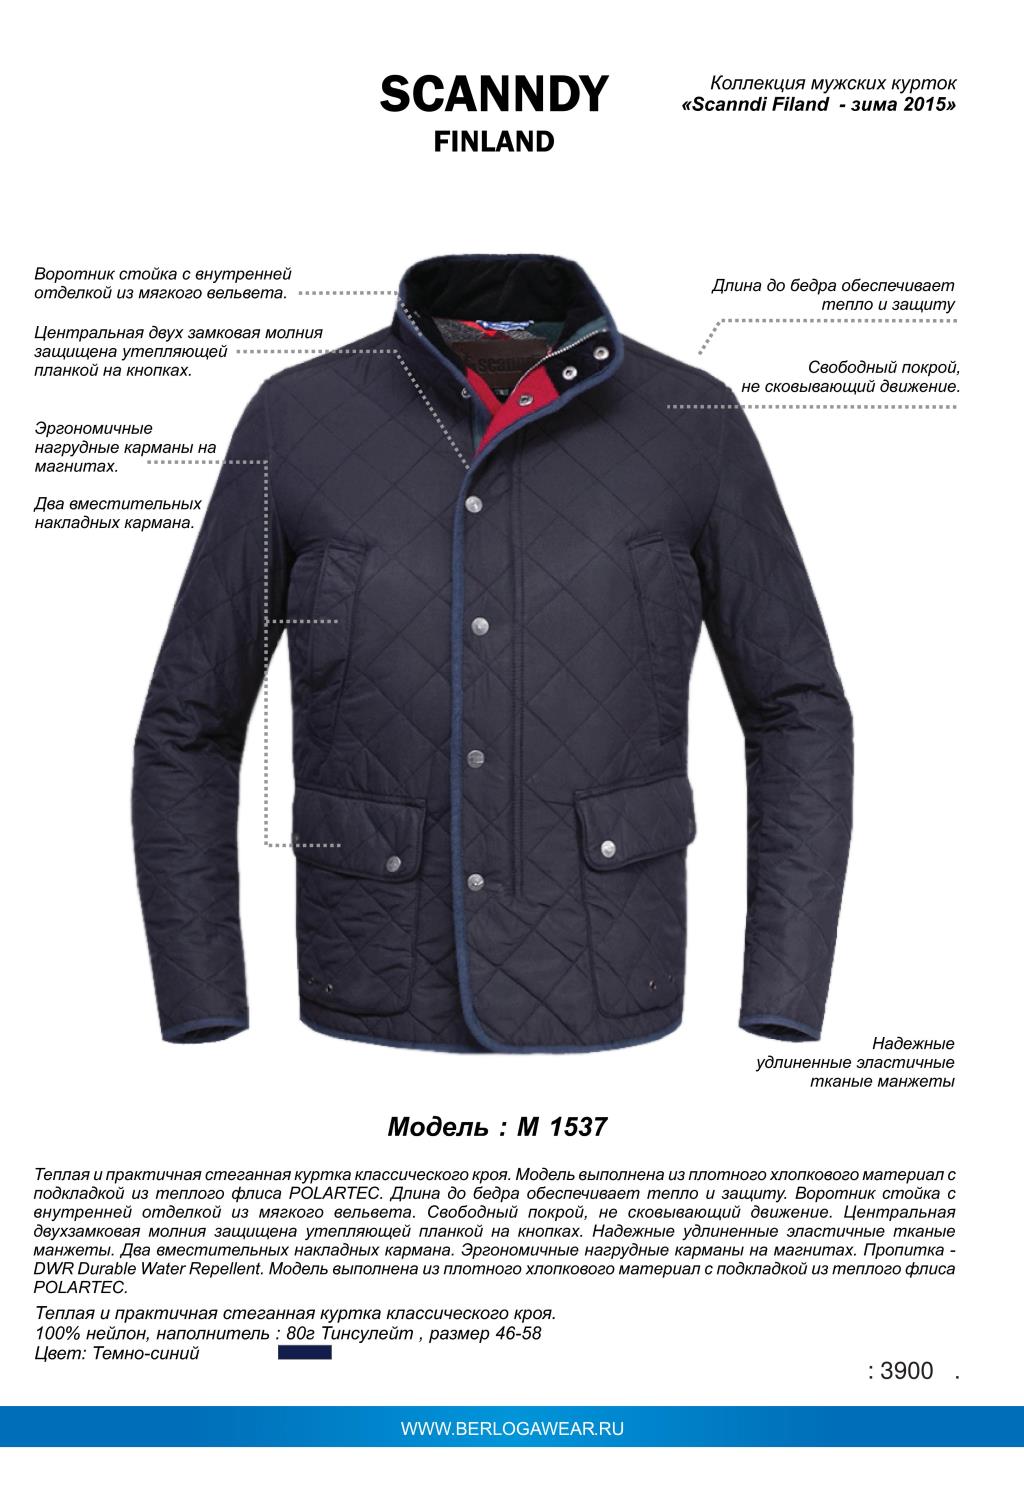 Название курток мужских. Ginmerlin куртки мужские модель 7808. Финская куртка мужская. Финская фирма куртки мужские. Бренды финских зимних мужских курток.